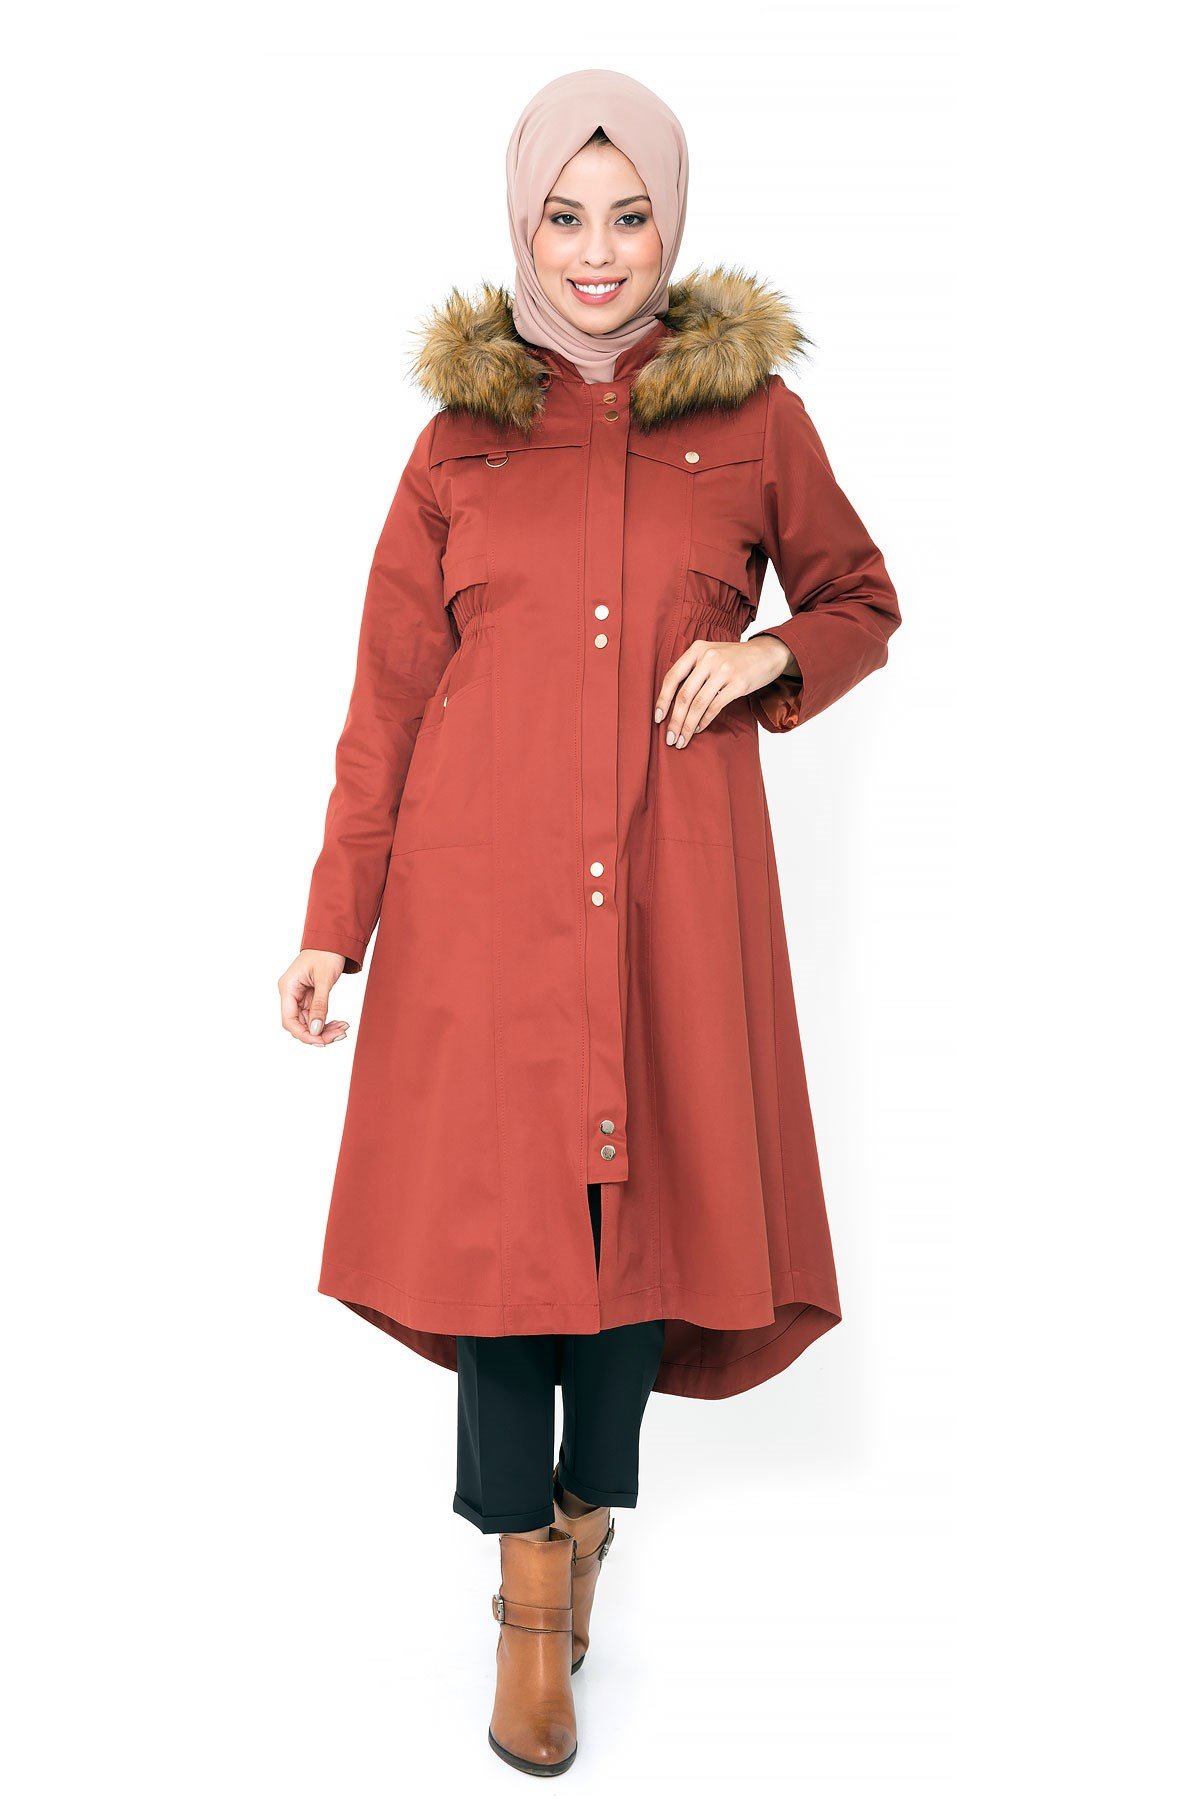 Manteau à capuche couleur brique avec fermeture éclair